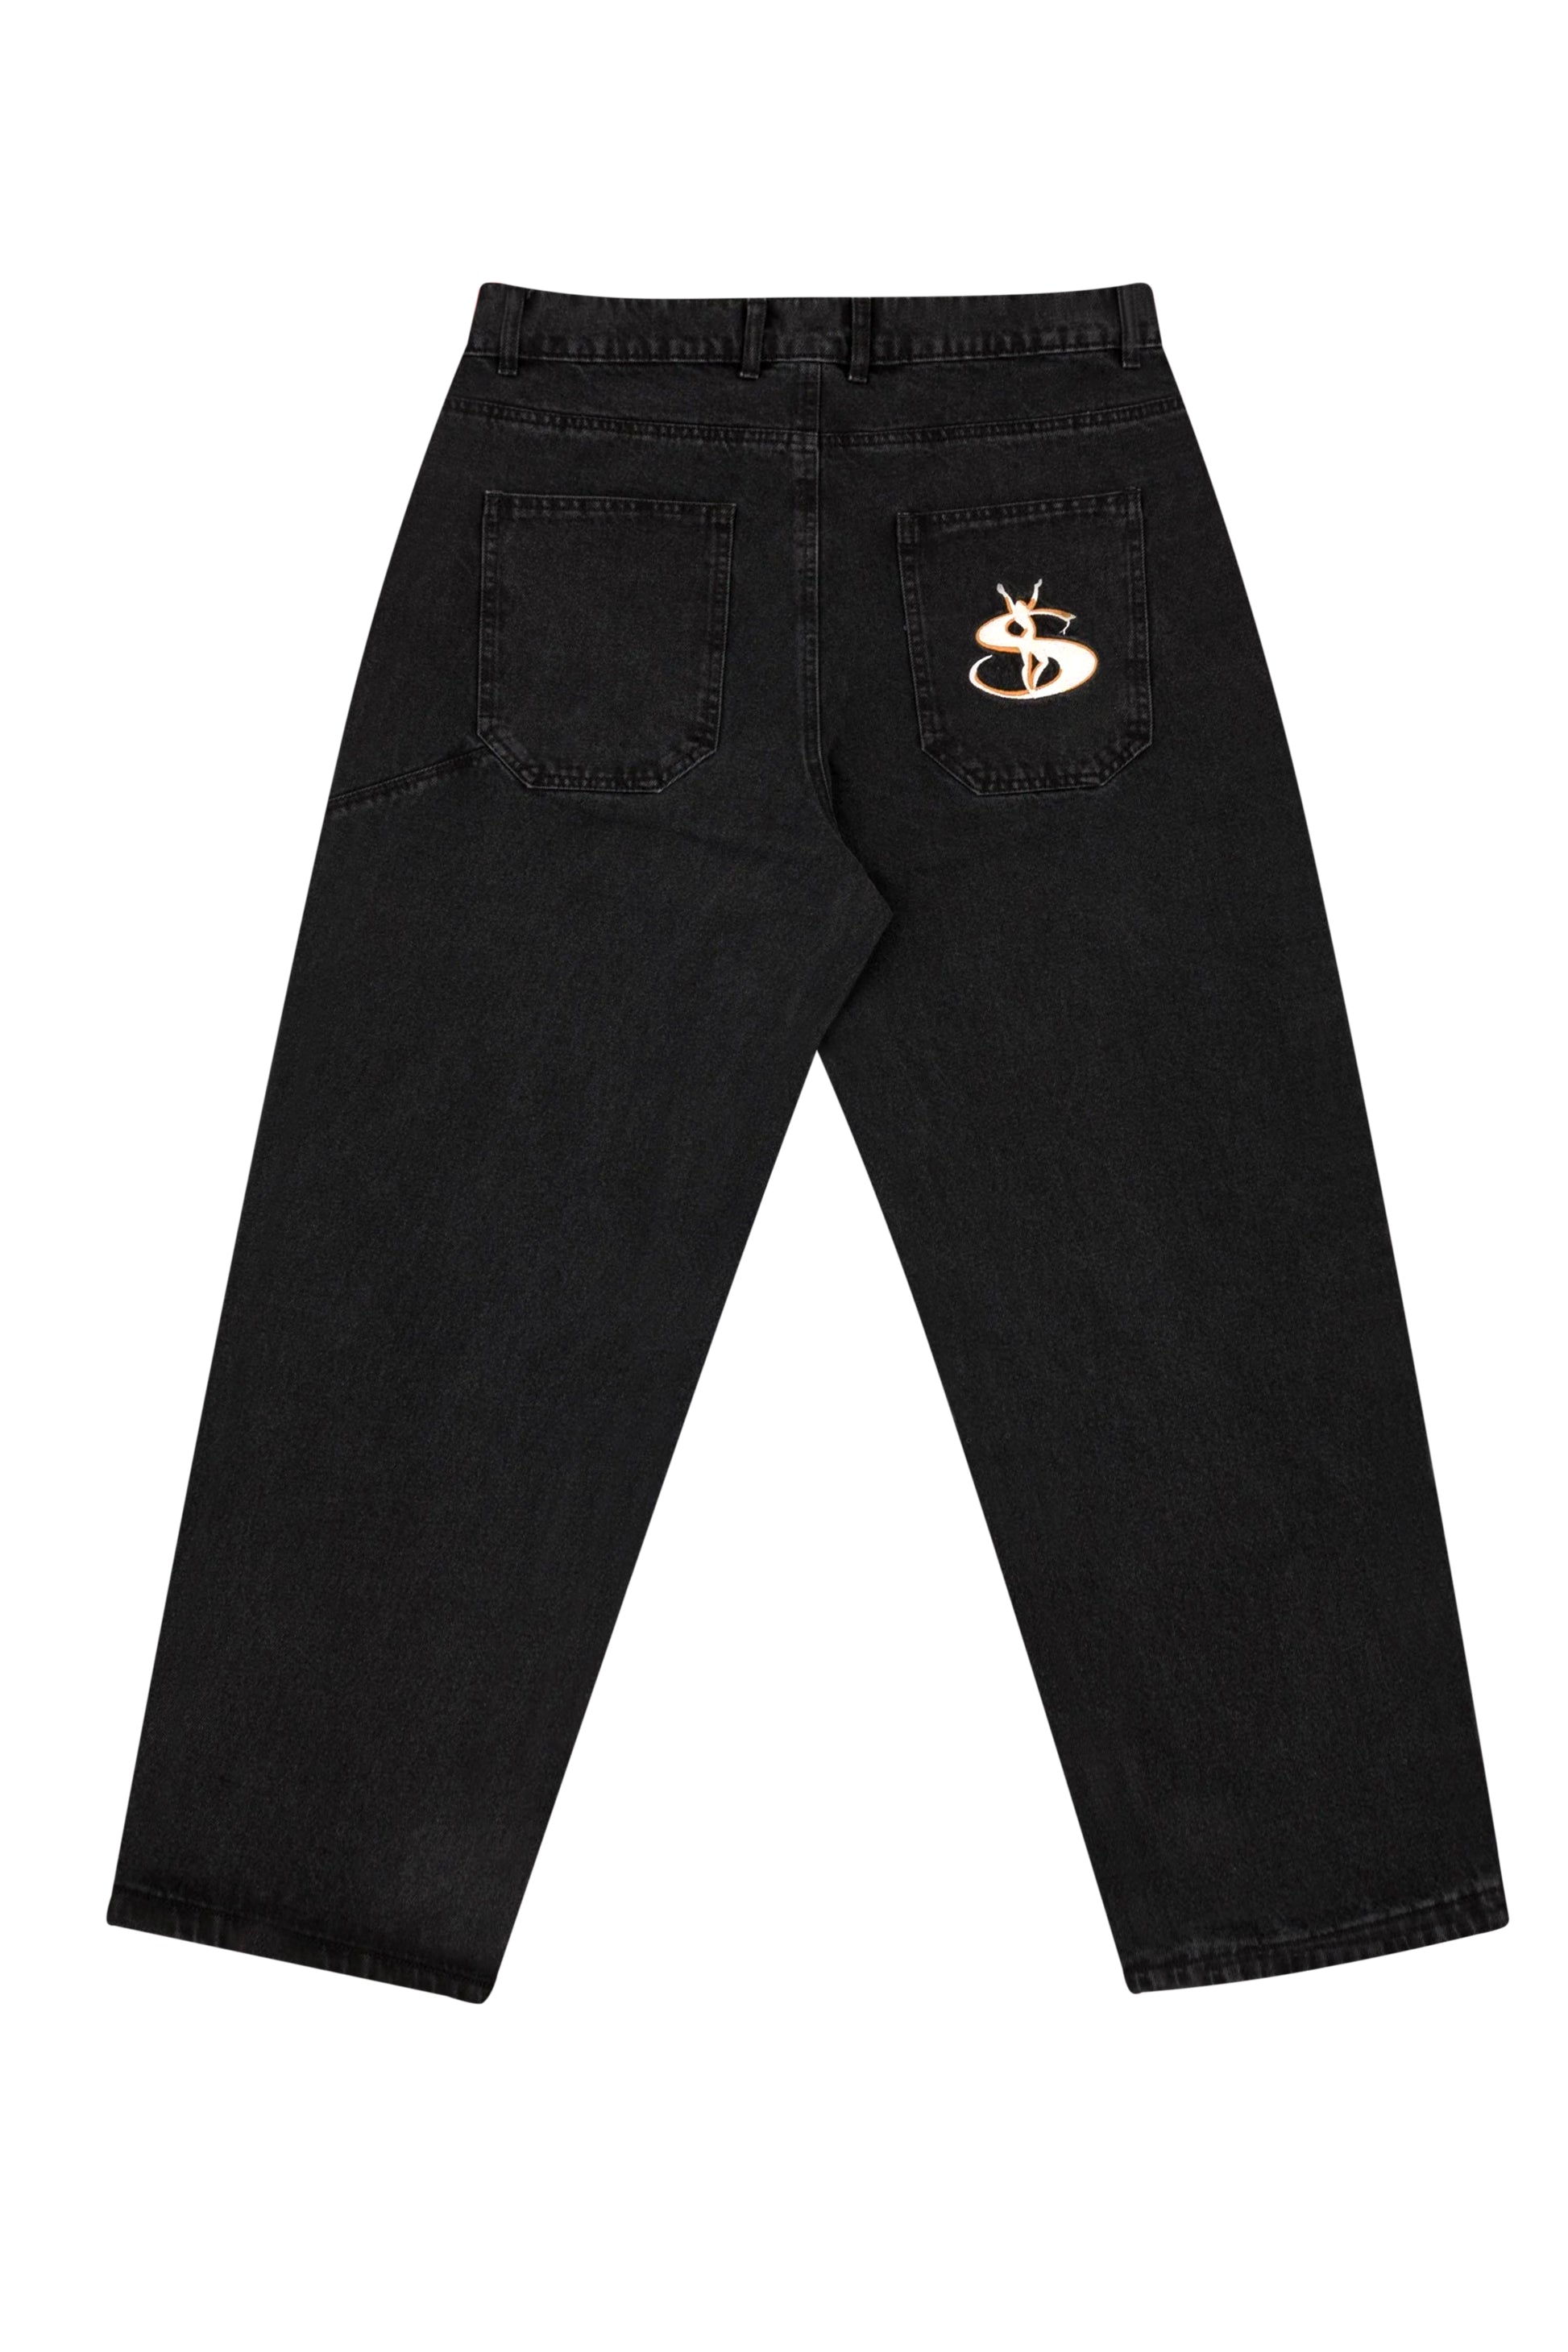 正規流通品 Yardsale Phantasy Jeans black supreme - パンツ